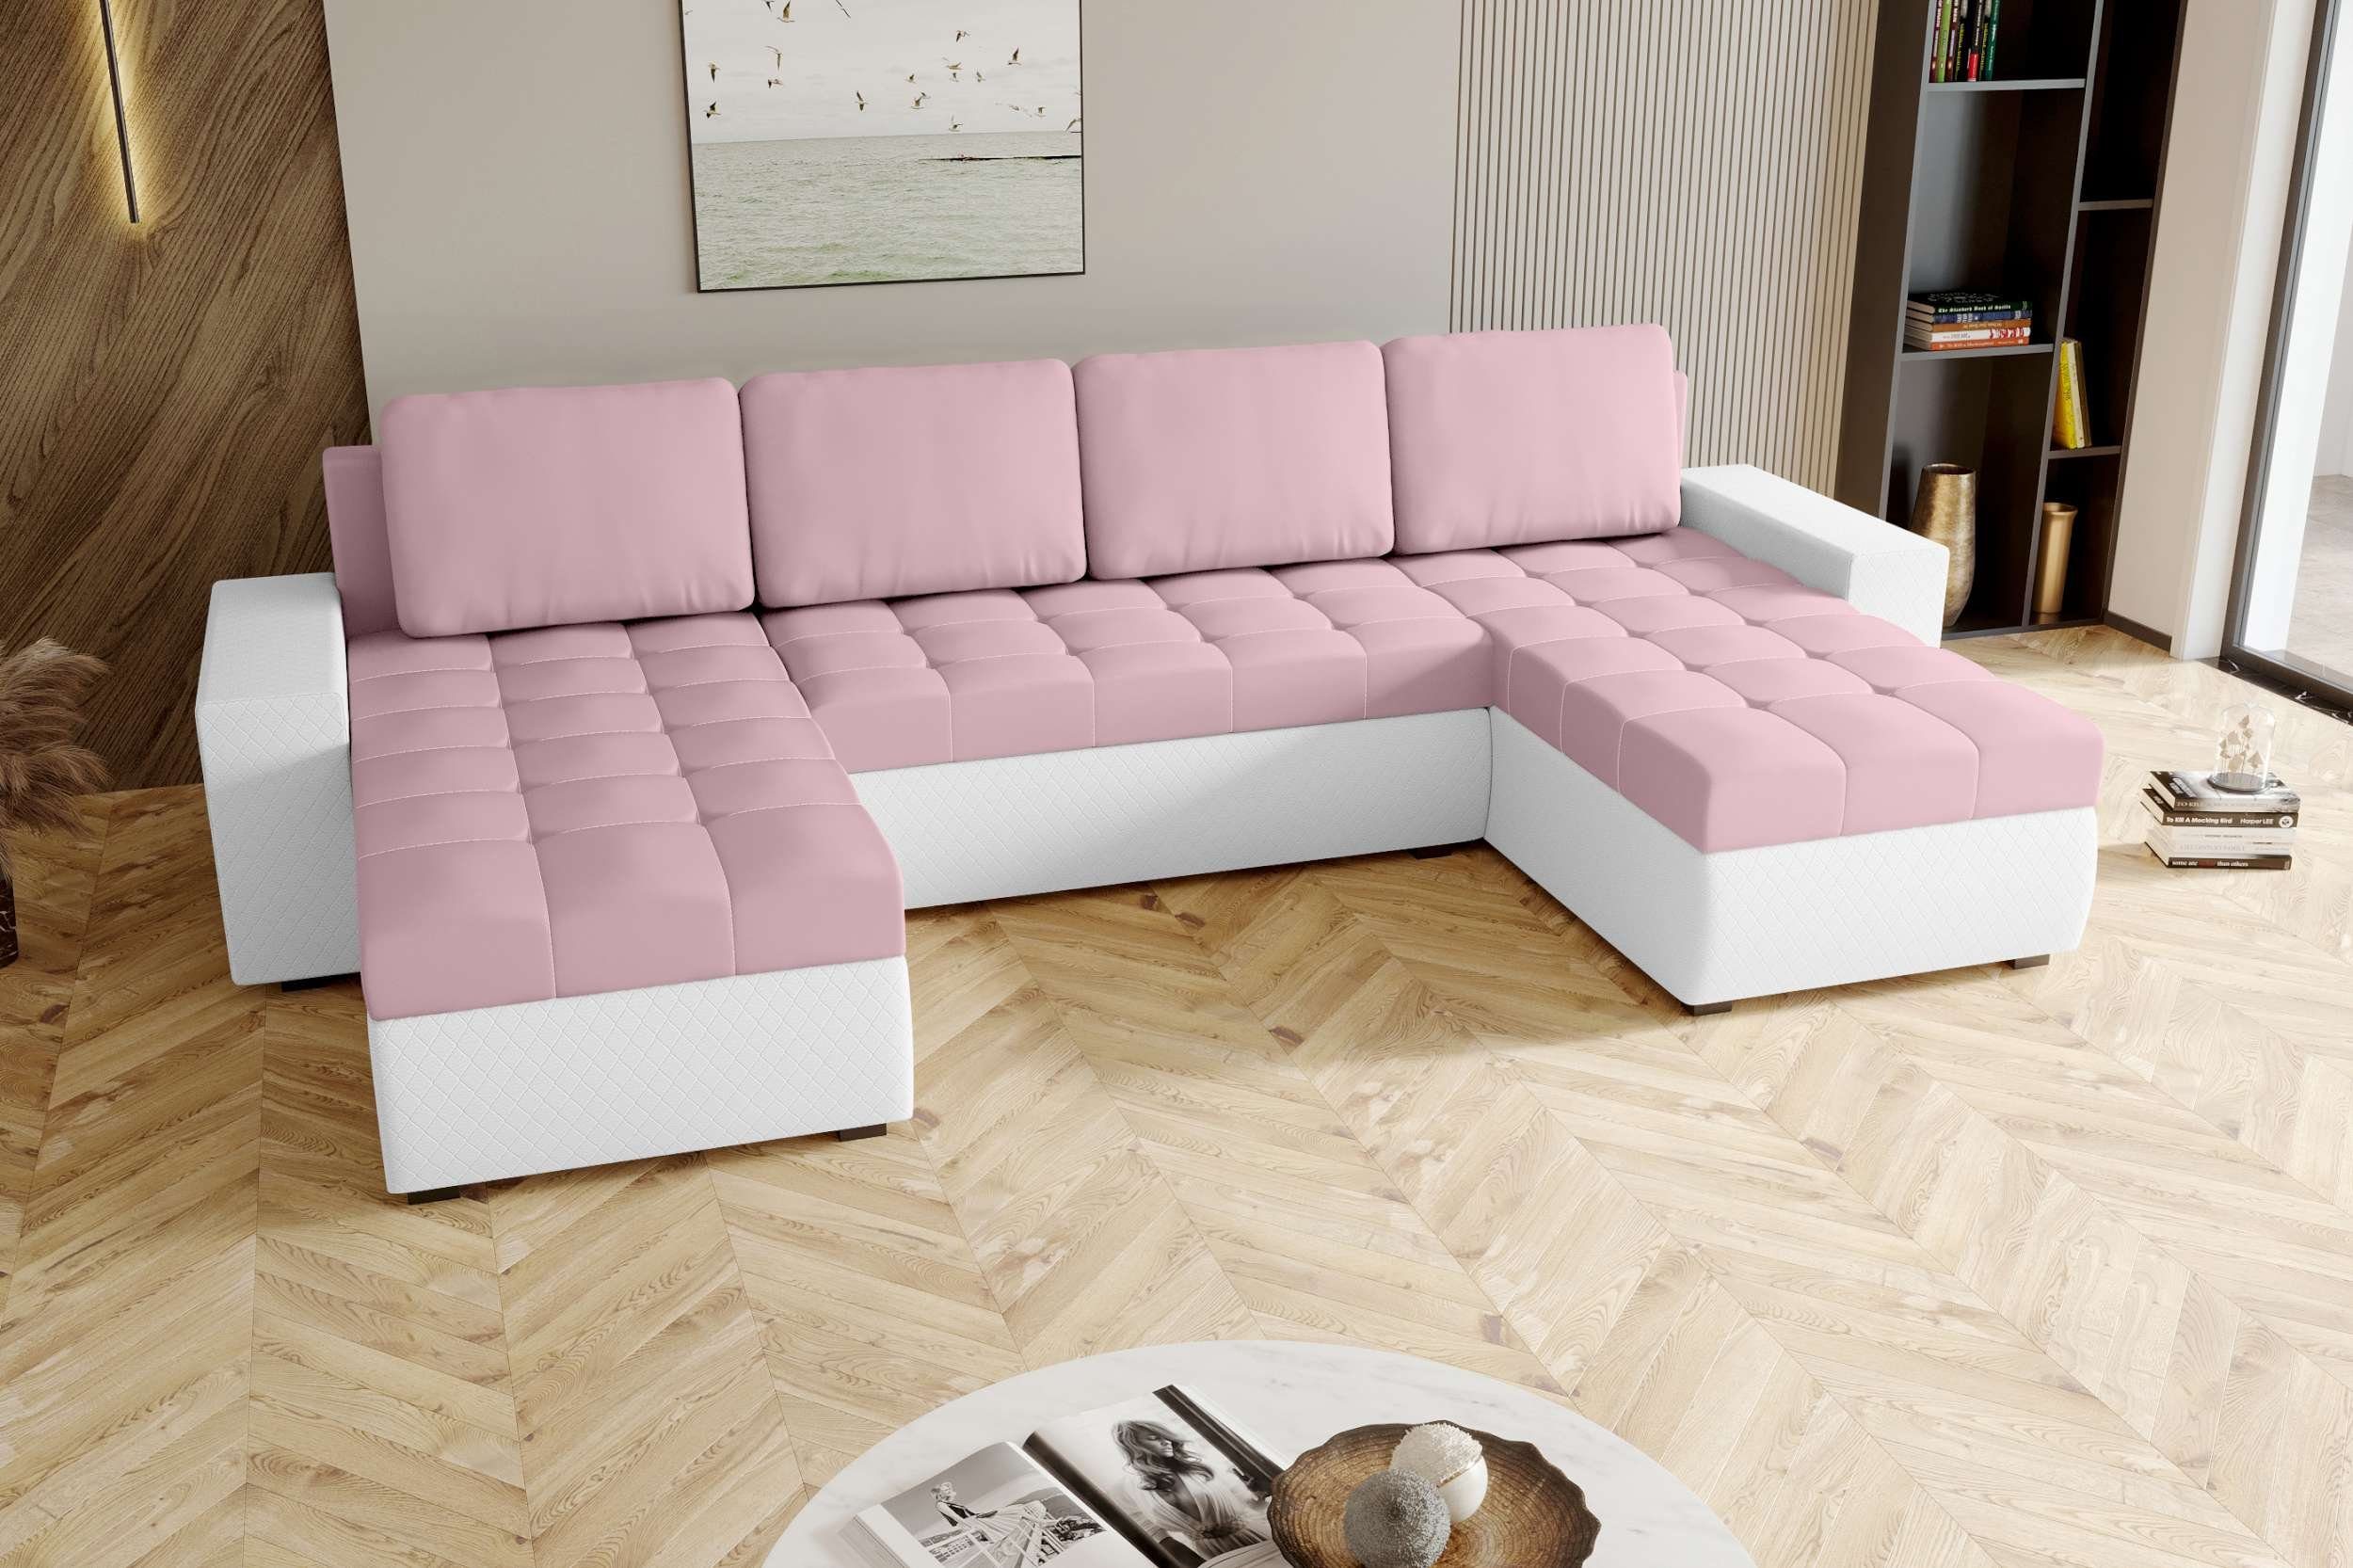 Amelia, mit Stylefy U-Form, mit Sofa, Wohnlandschaft Bettfunktion, Design Eckcouch, Sitzkomfort, Modern Bettkasten,